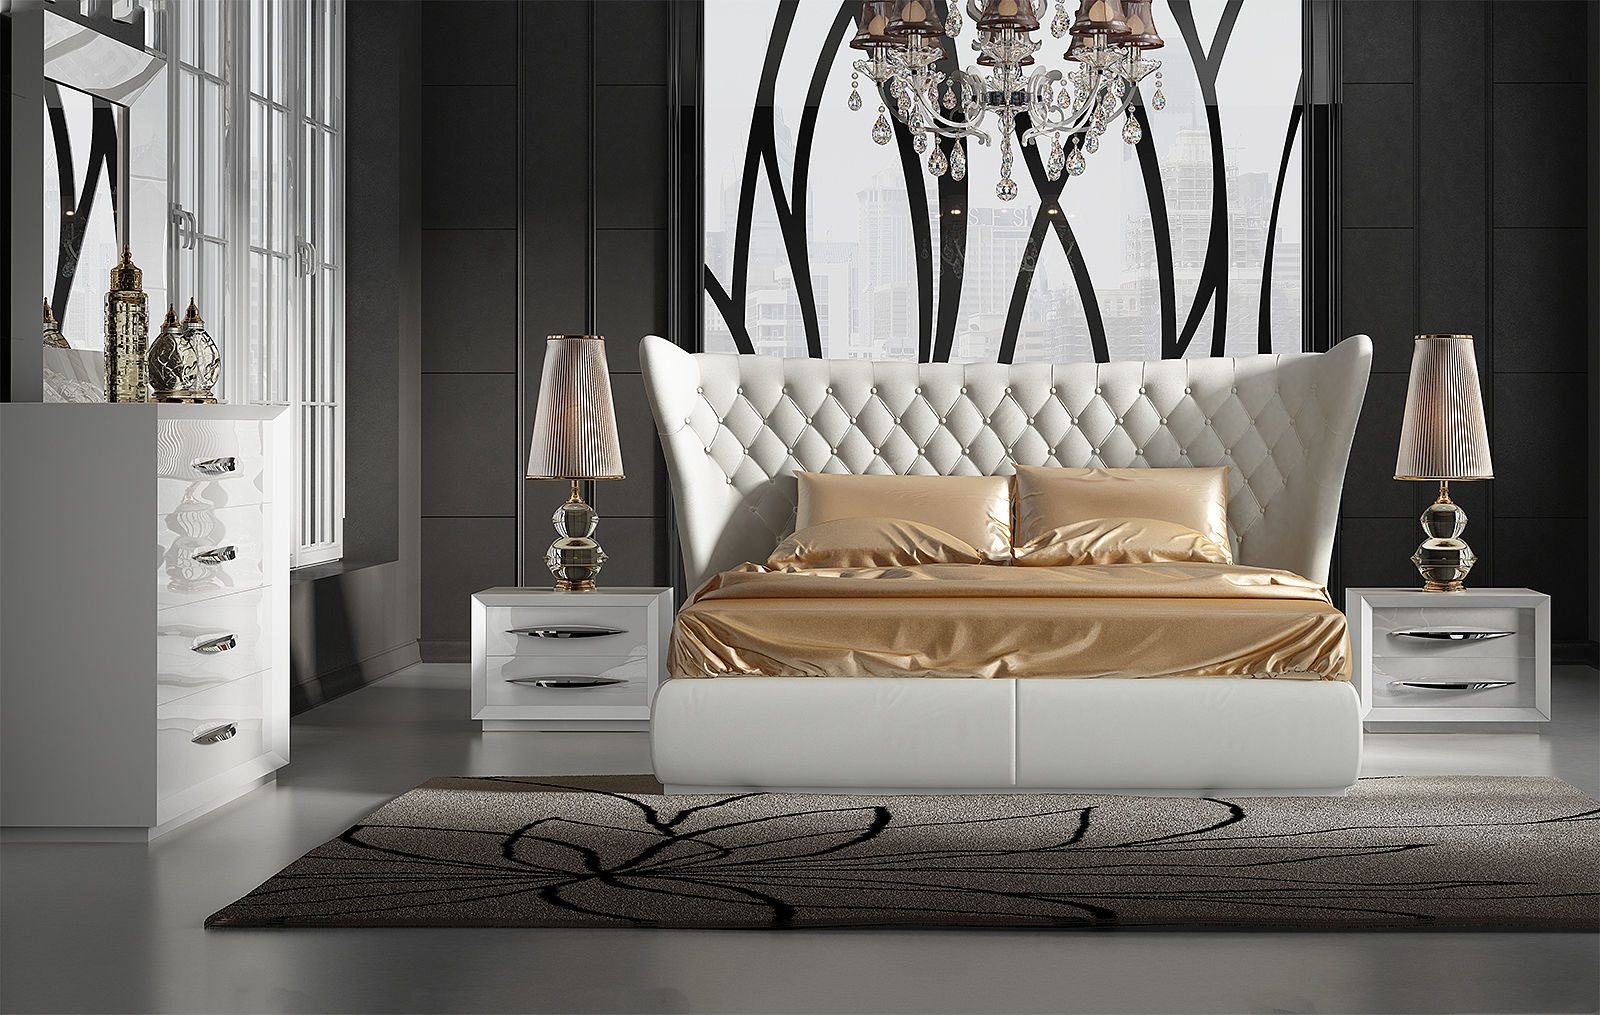 Кровать franco miami franco furniture белый 225.0x148.0x230.0 см.